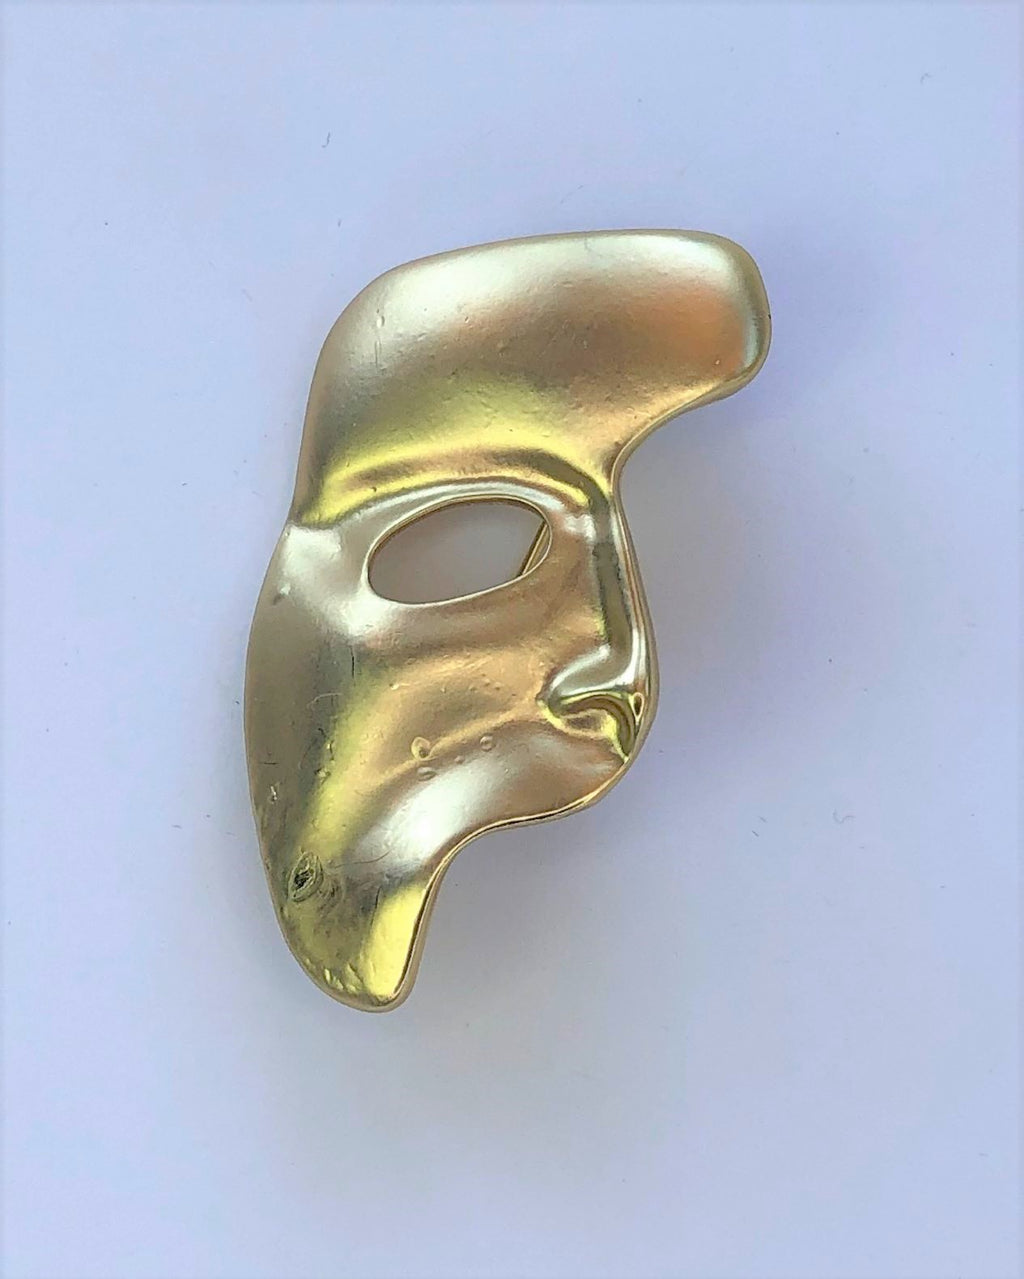 Gold Phantom of the Opera mask brooch at erika